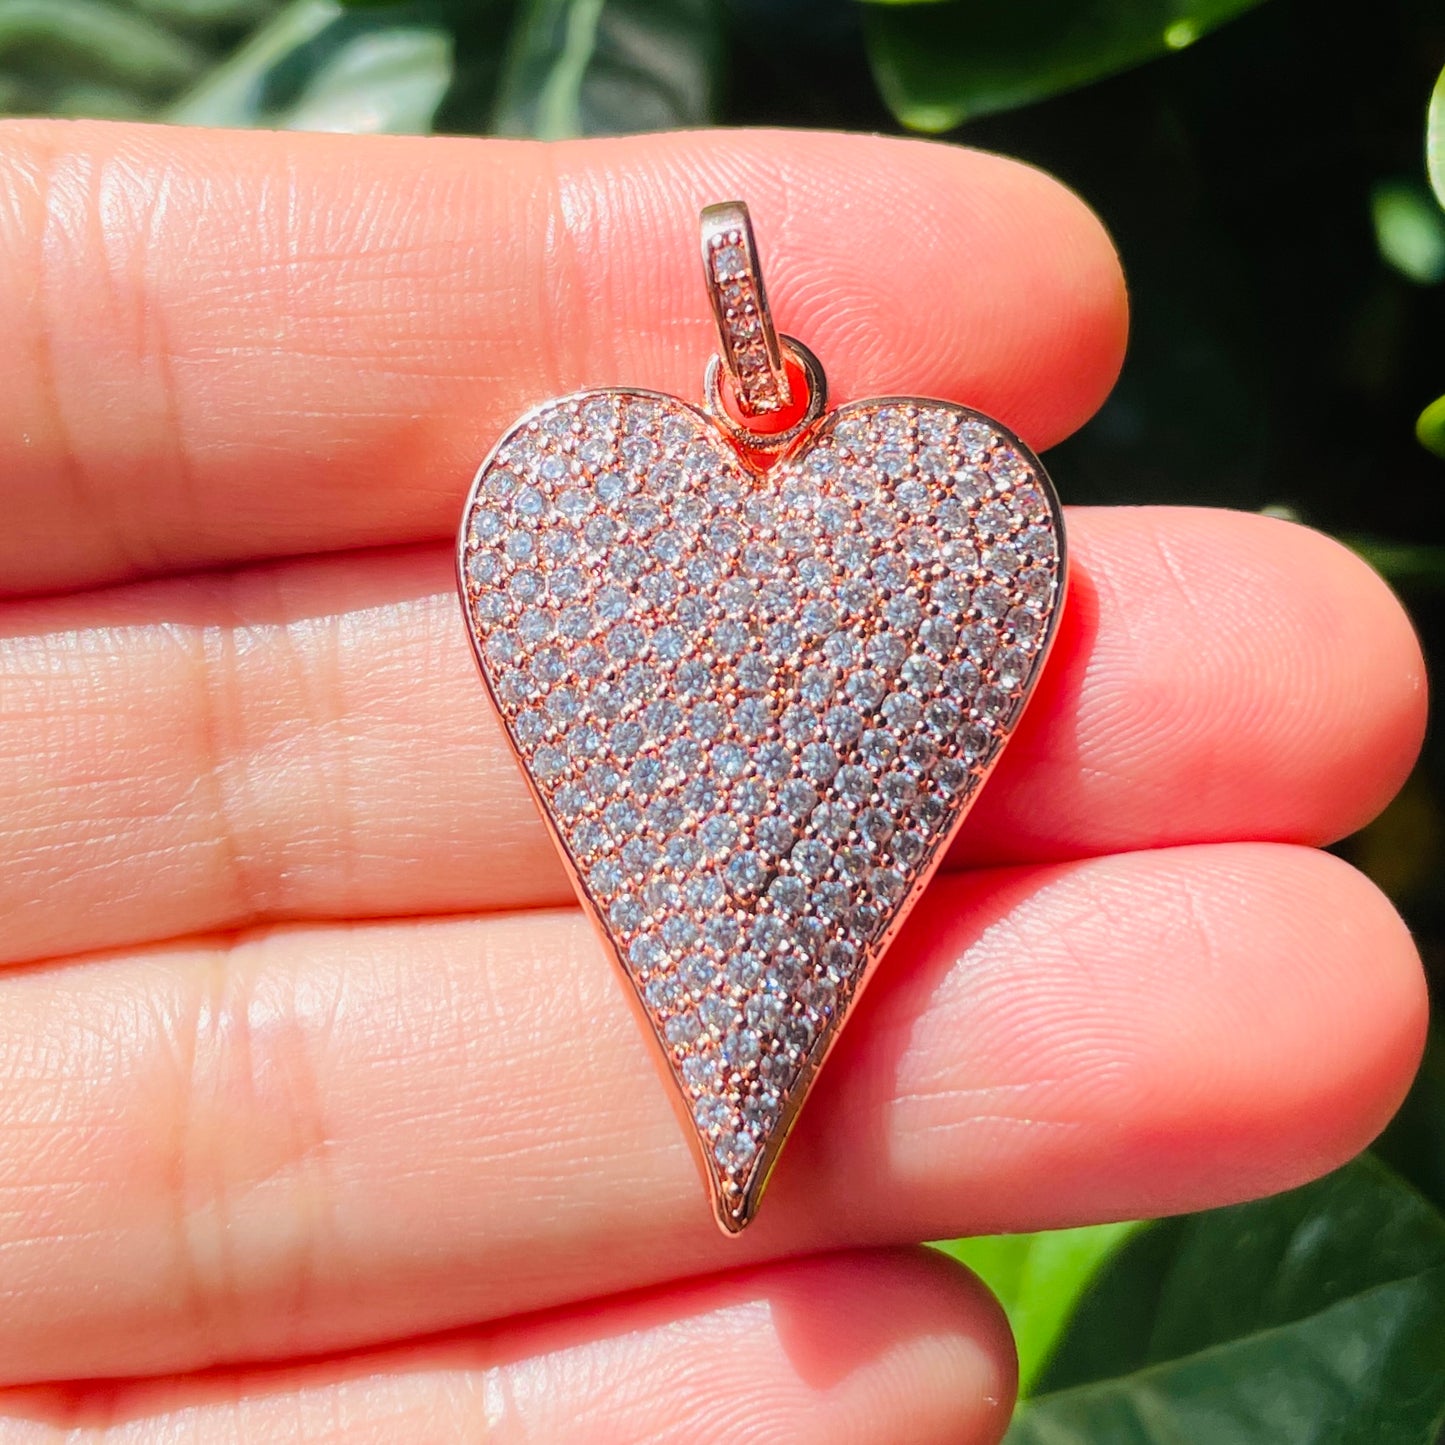 10pcs/lot 40*23mm CZ Paved Heart Charm Pendants CZ Paved Charms Hearts New Charms Arrivals Charms Beads Beyond